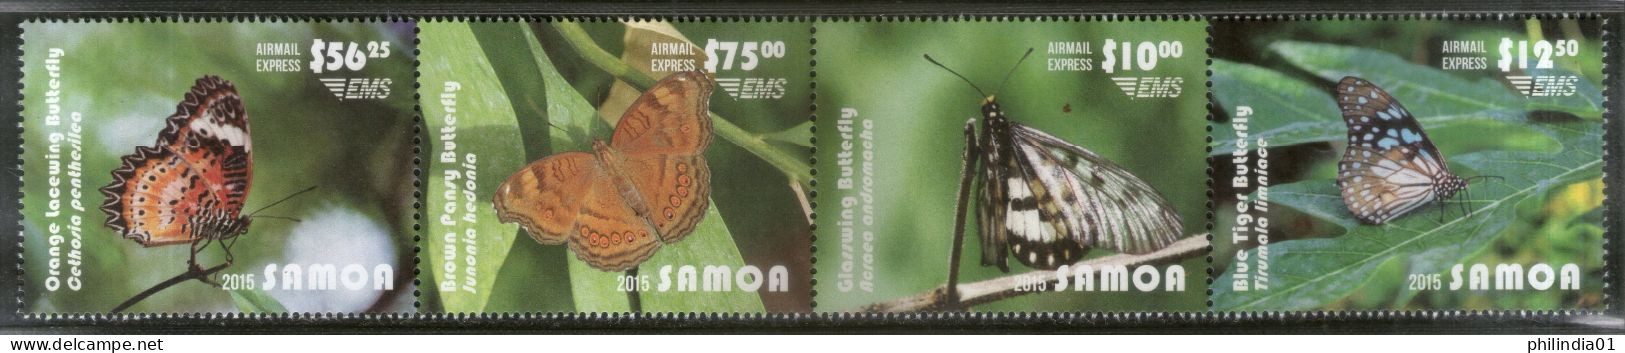 Samoa 2015 Butterflies Moth Insect Fauna Sc C15 4v CV $115 MNH # 213 - Papillons